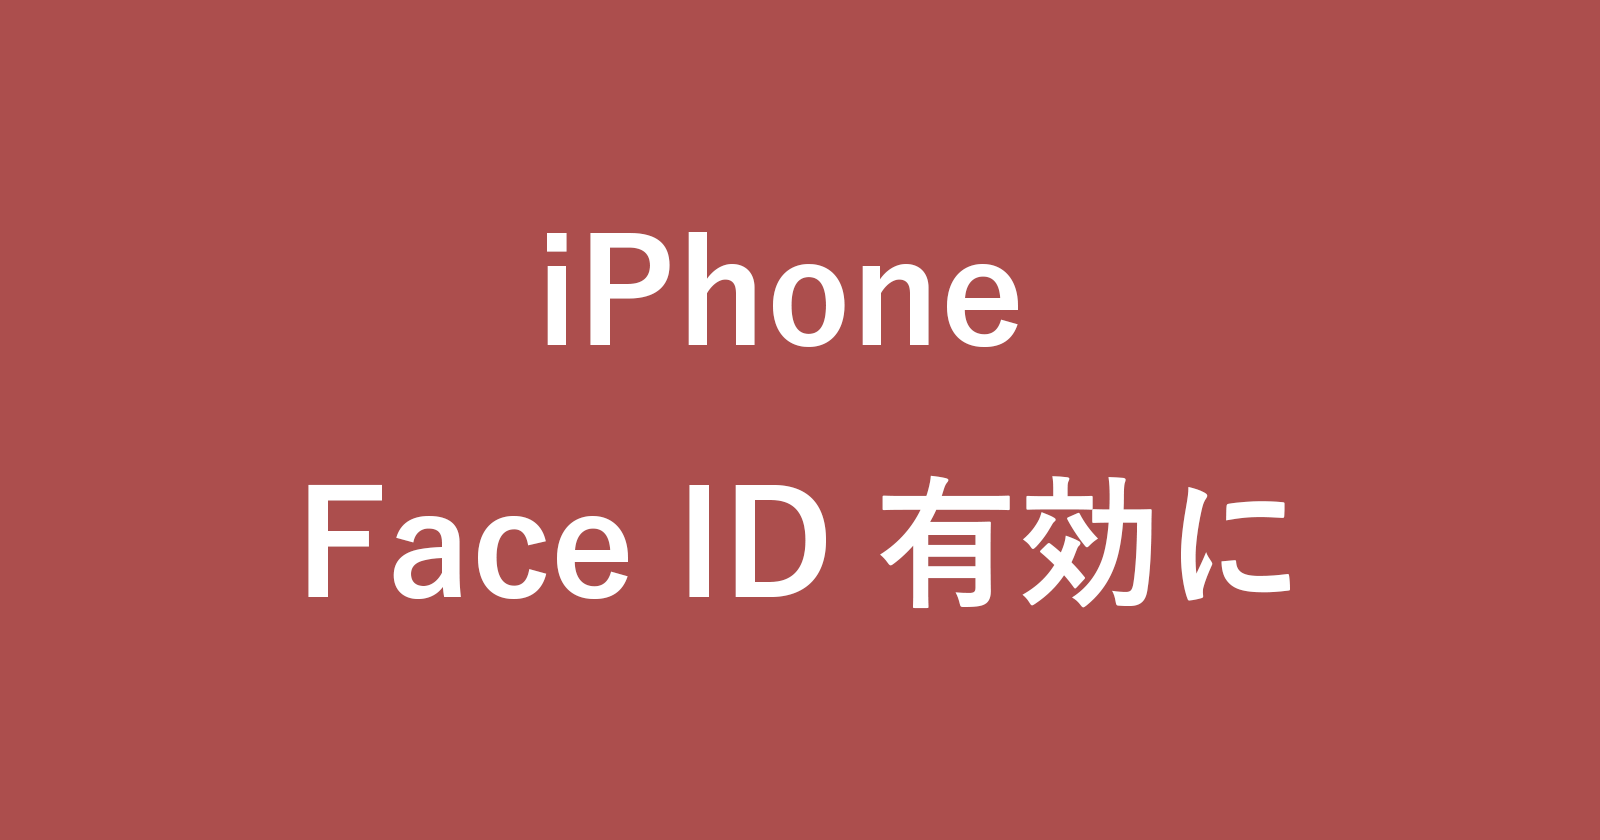 iphone setup face id